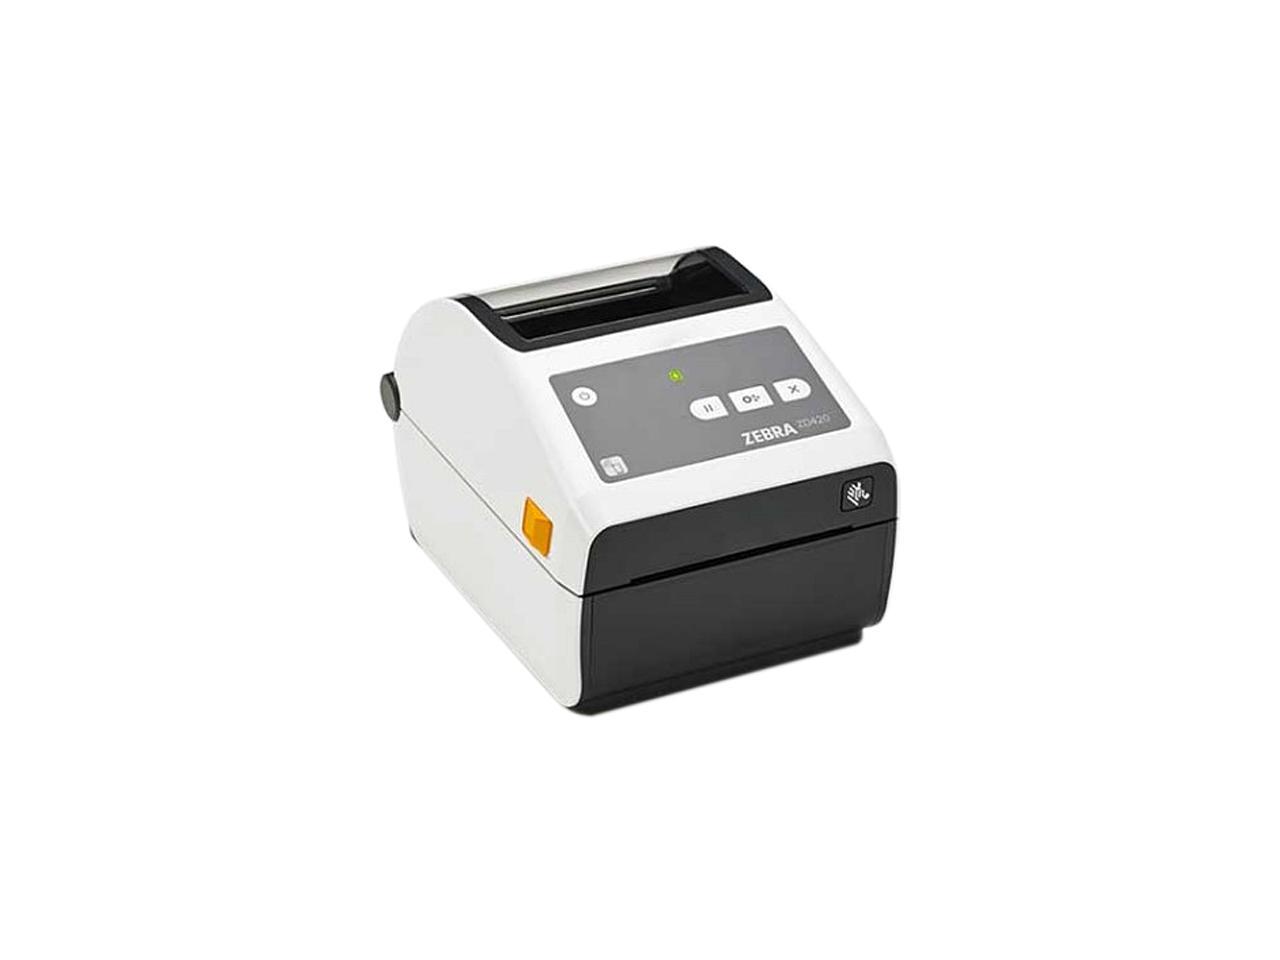 Zebra Zd420 Series 4 Direct Thermal Label Printer For Healthcare 203 Dpi Usb Usb Host 7718